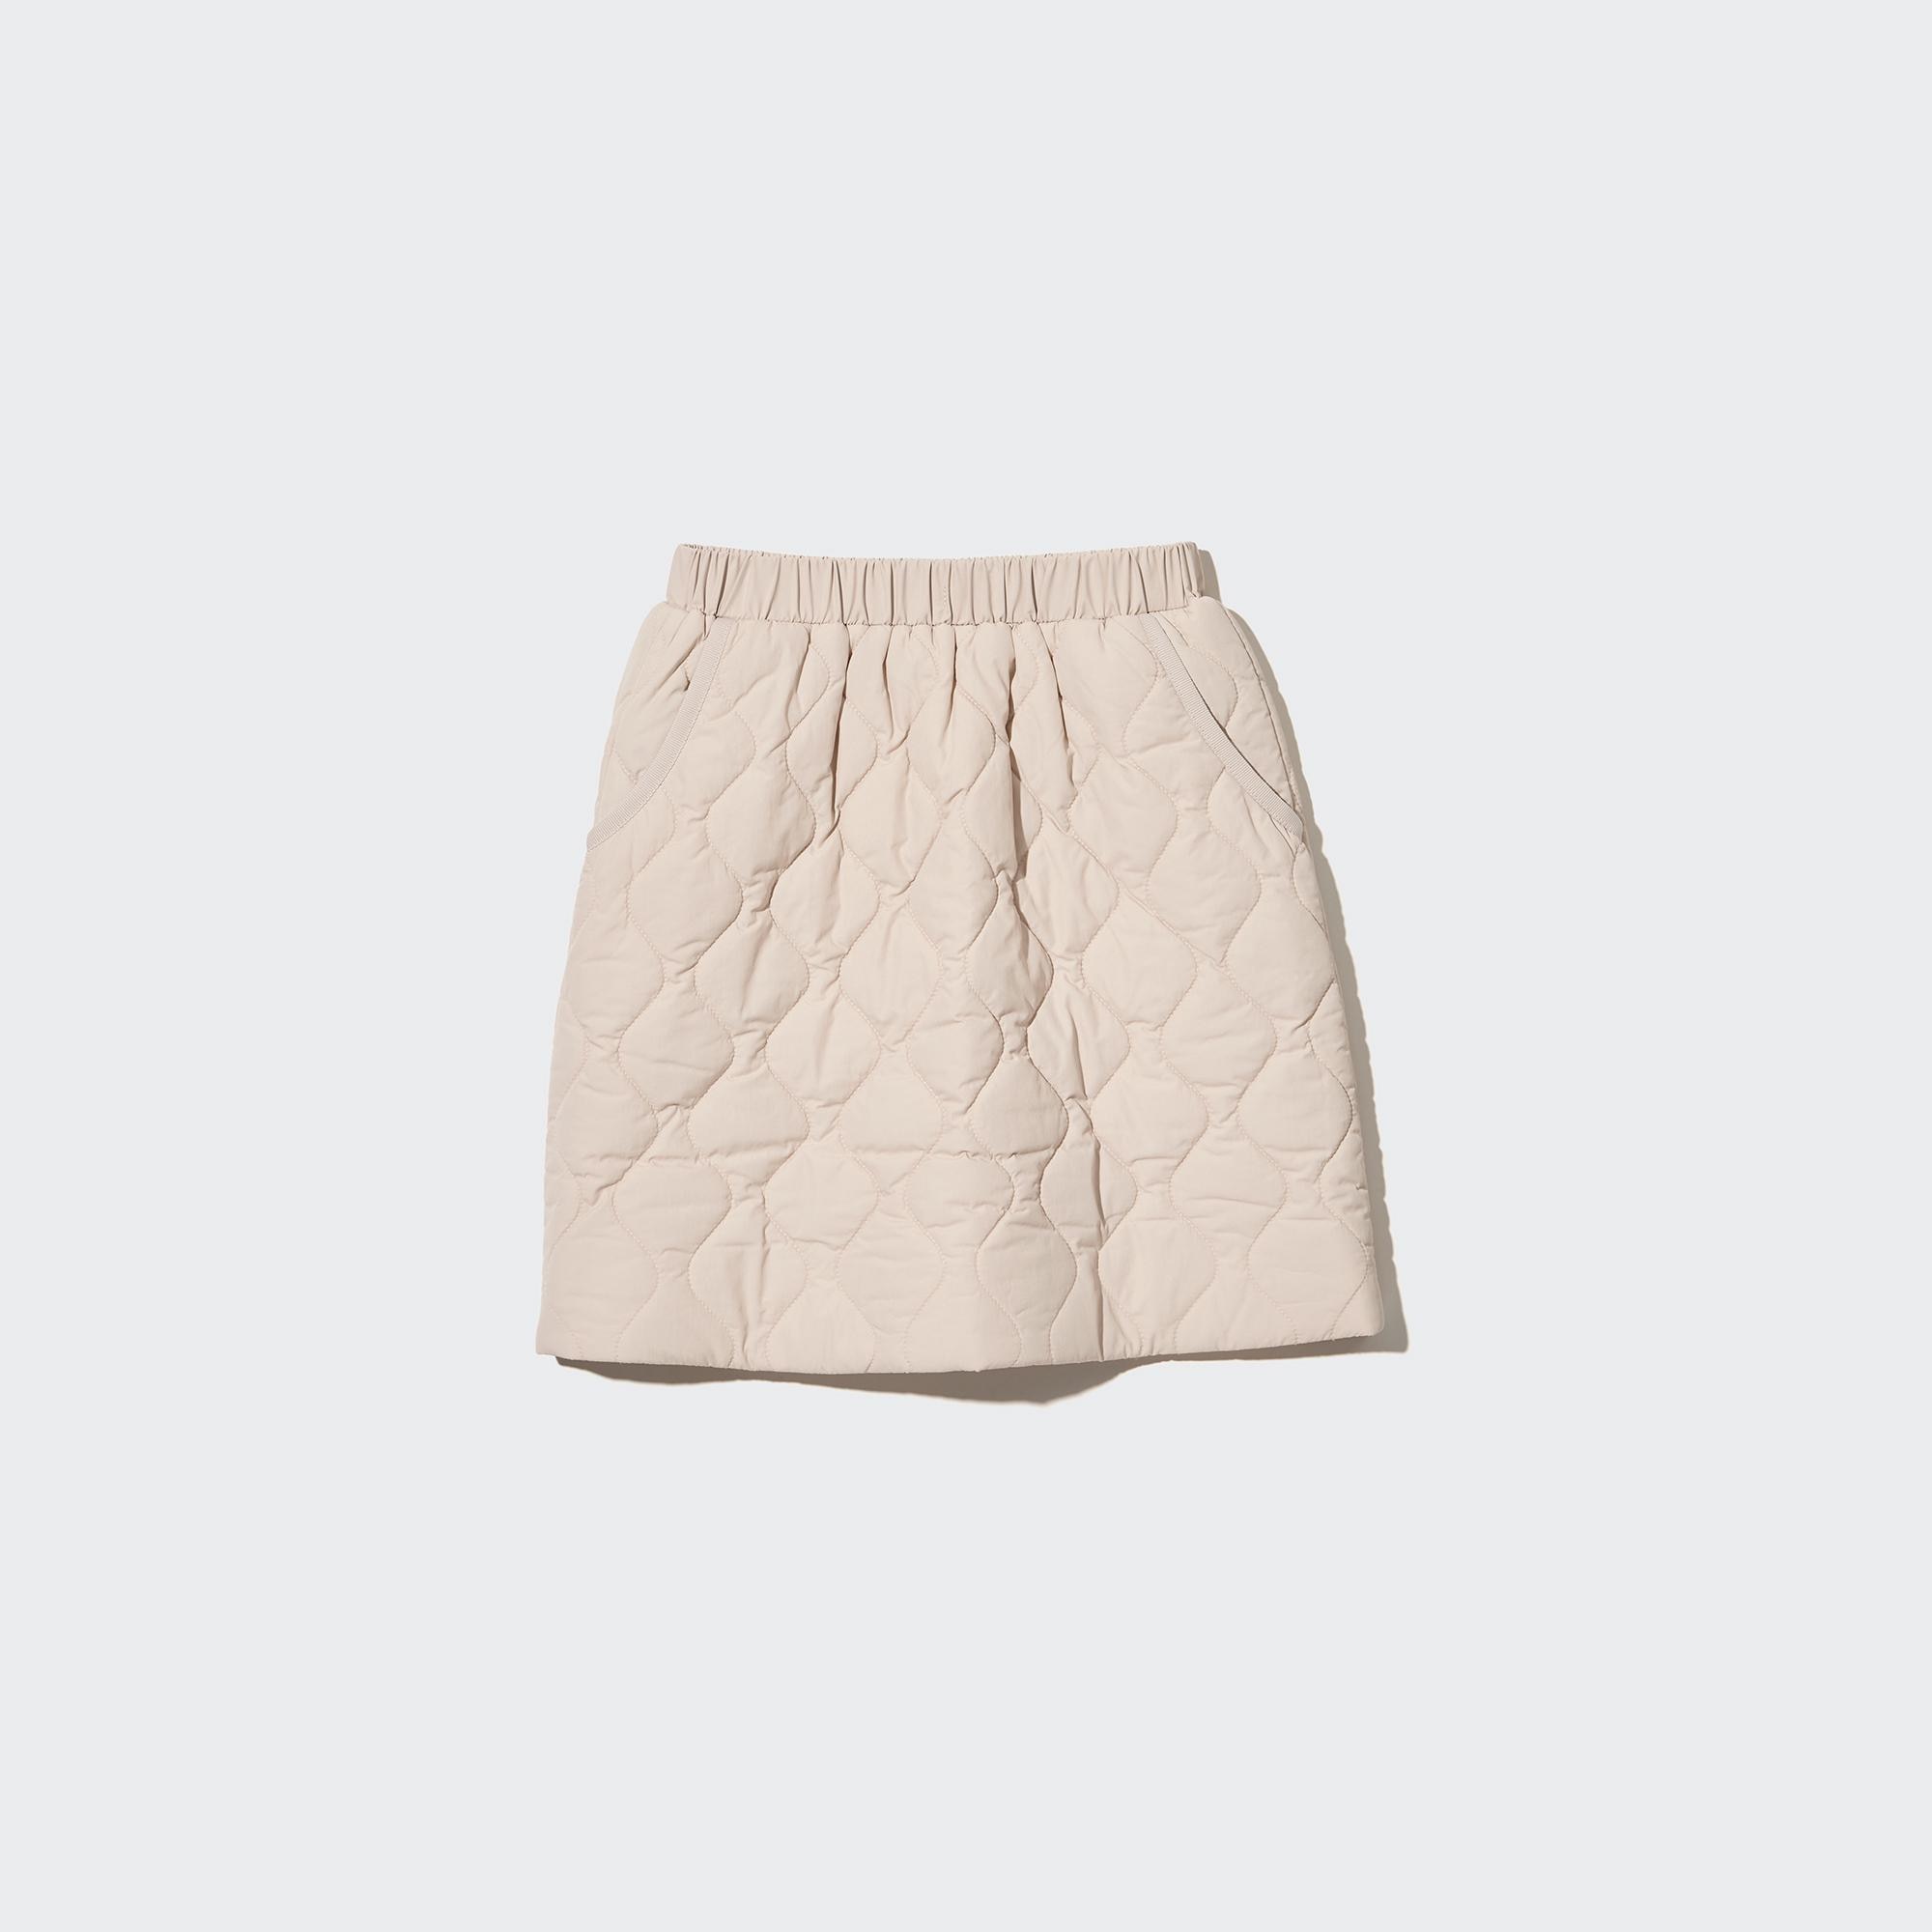 ユニクロキッズスカート（サイズ110） - スカート